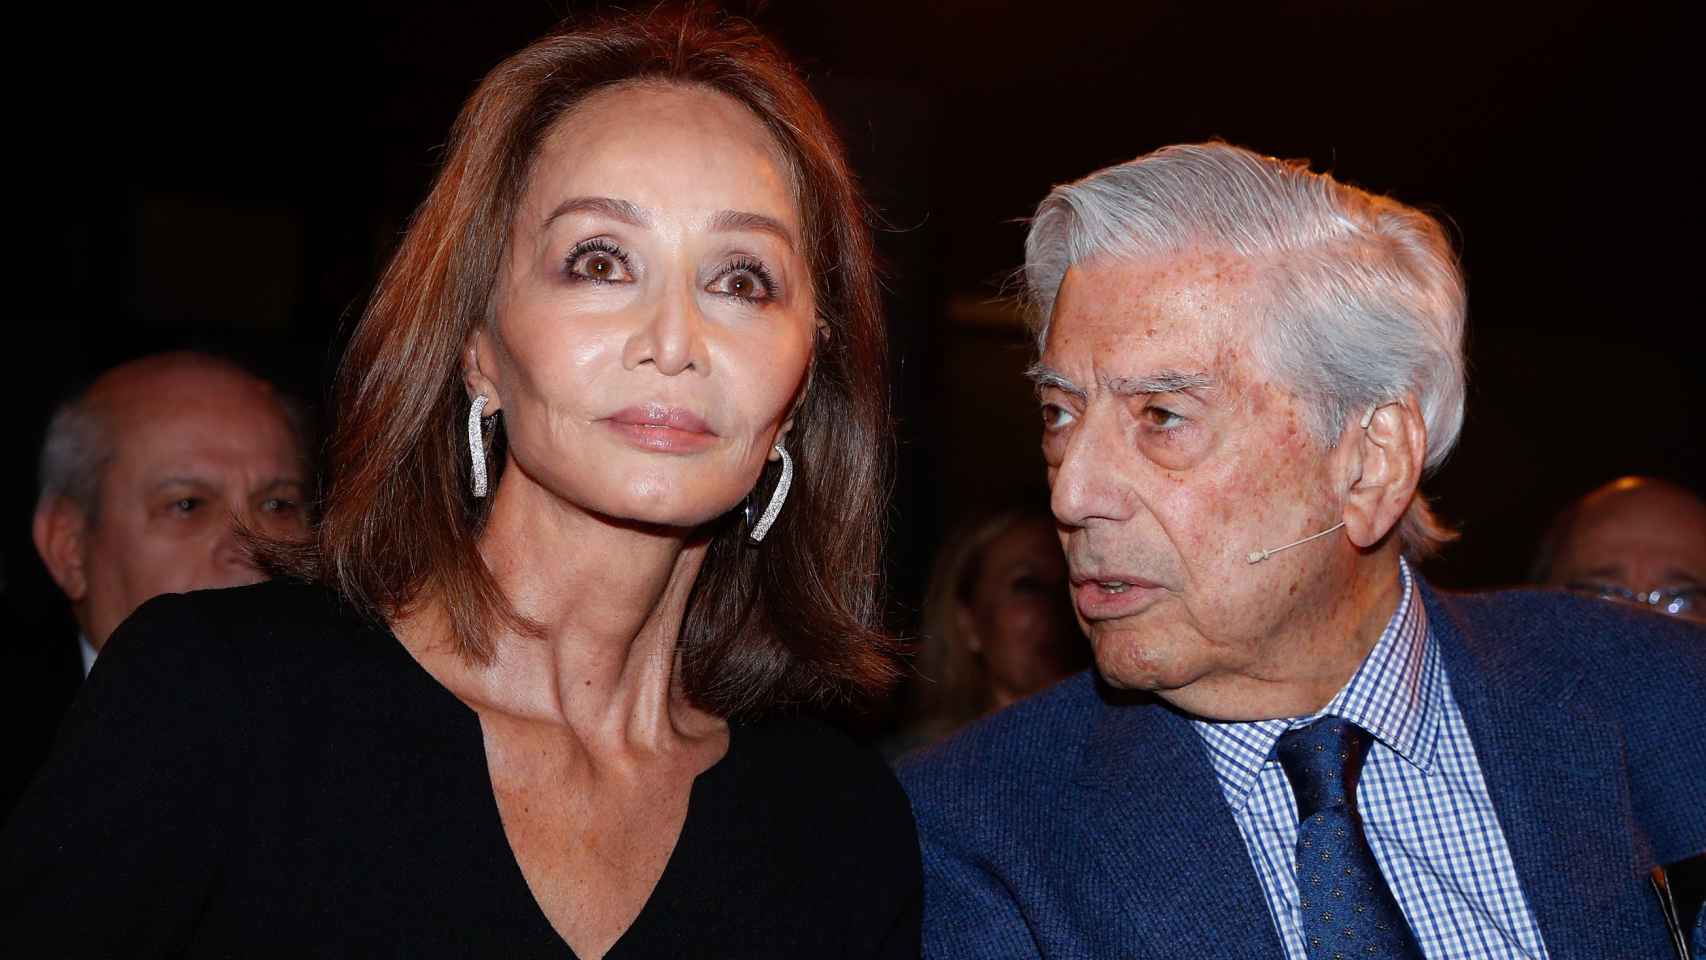 Isabel Preysler y Mario Vargas Llosa, visiblemente serio, en un acto público en octubre de 2019, en Madrid.